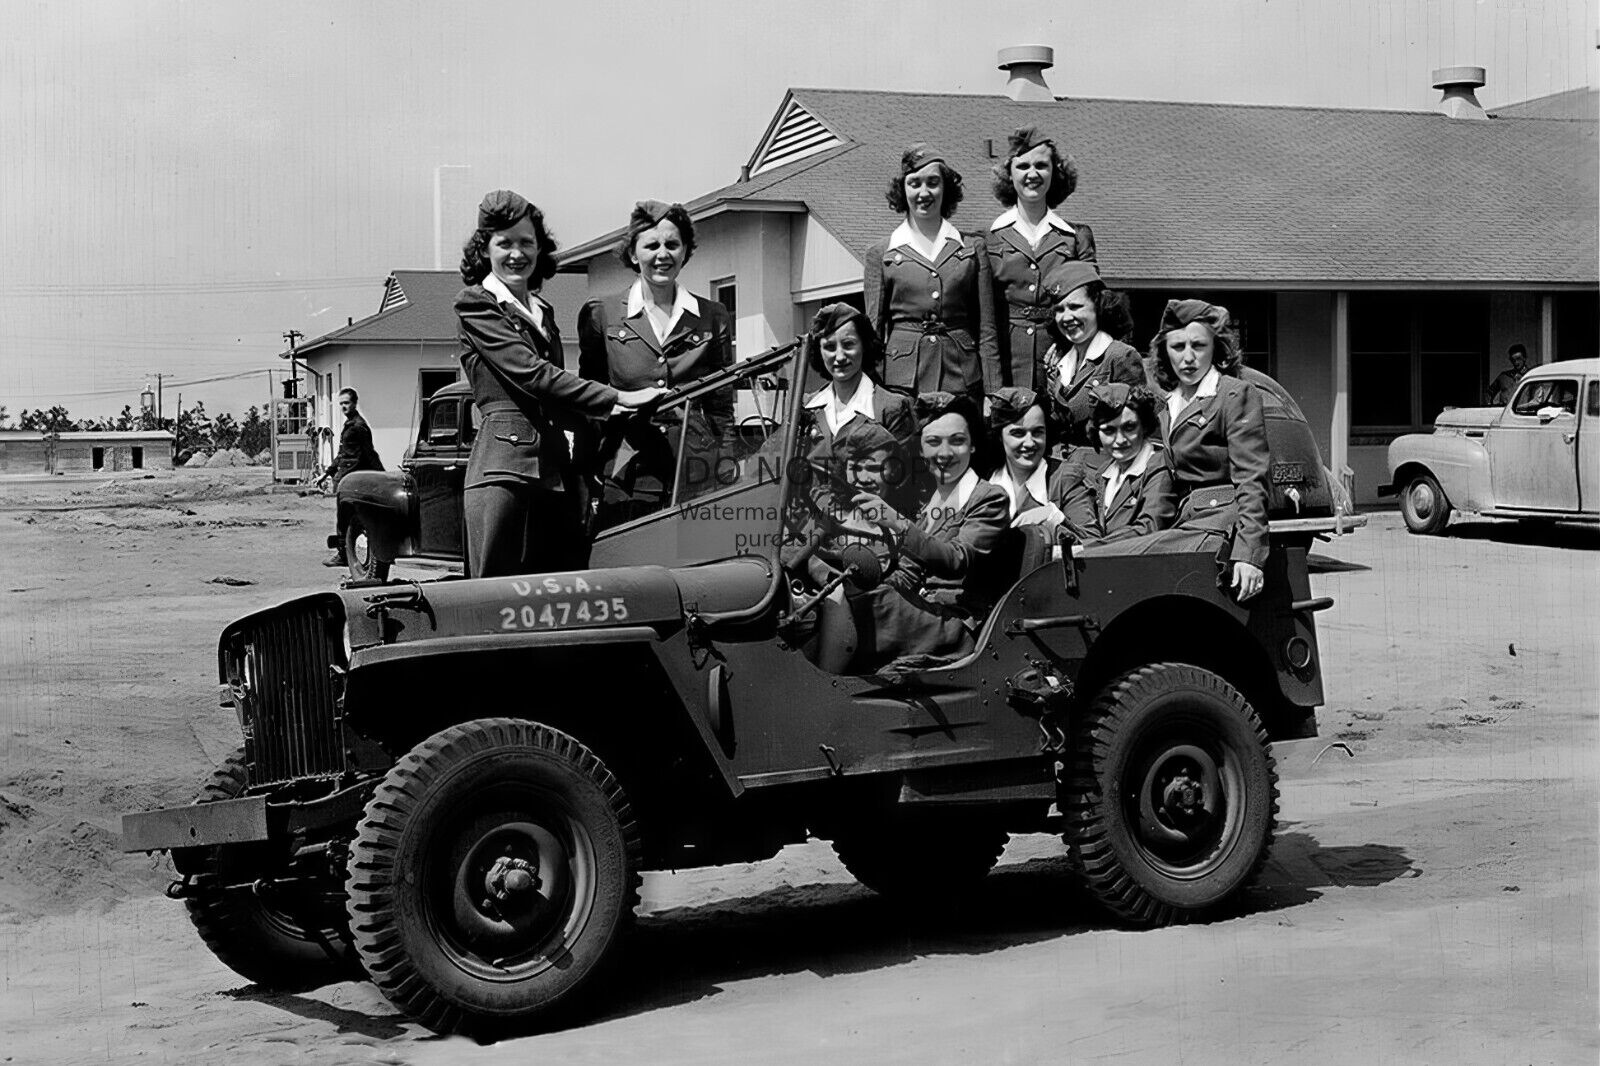 WOMEN'S ARMY CORPS WAC POSING IN ARMY JEEP WW2 WWII 4X6 B&W PHOTO POSTCARD